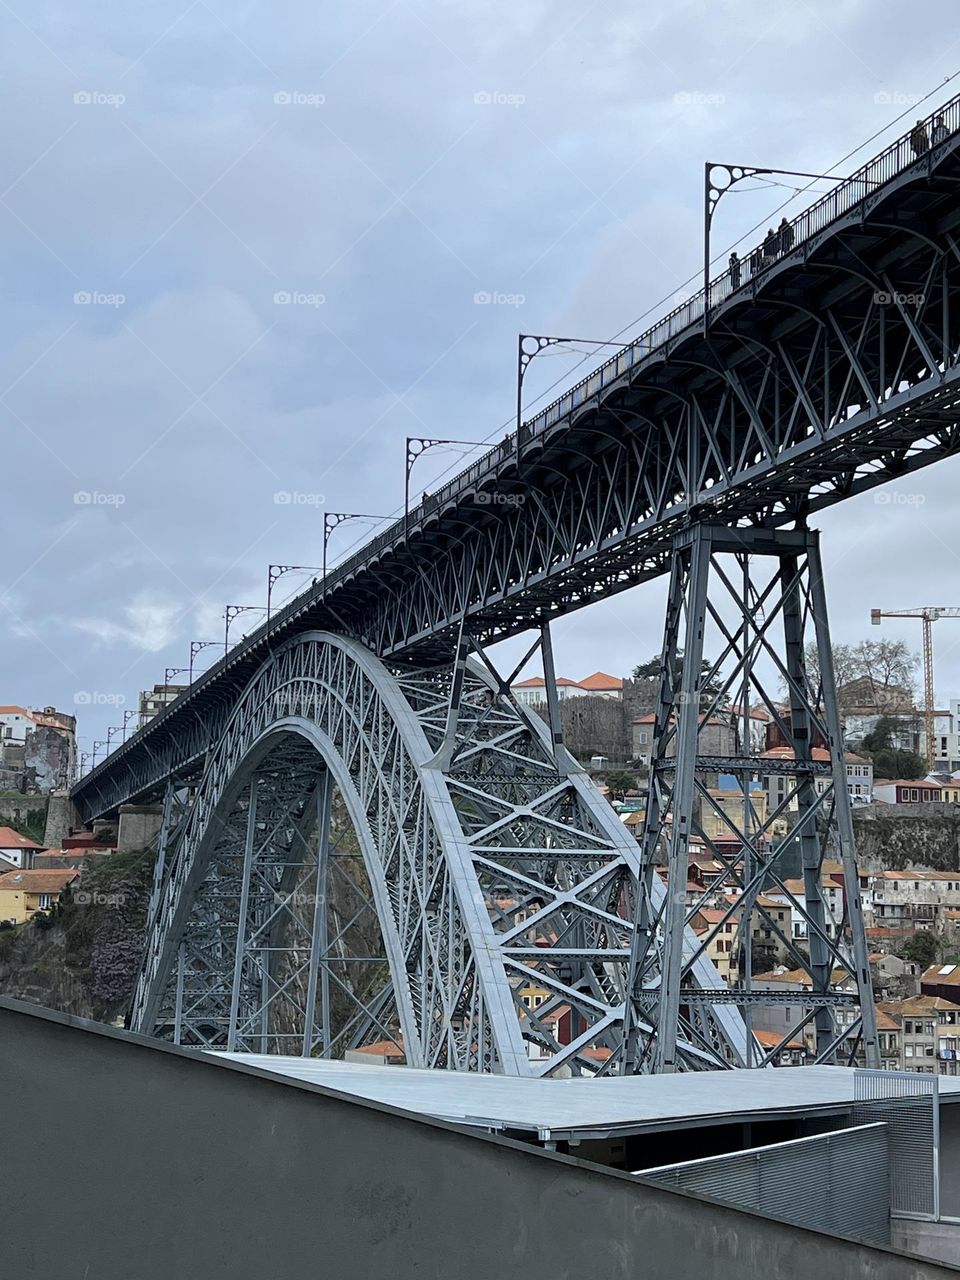 Bridge and metal